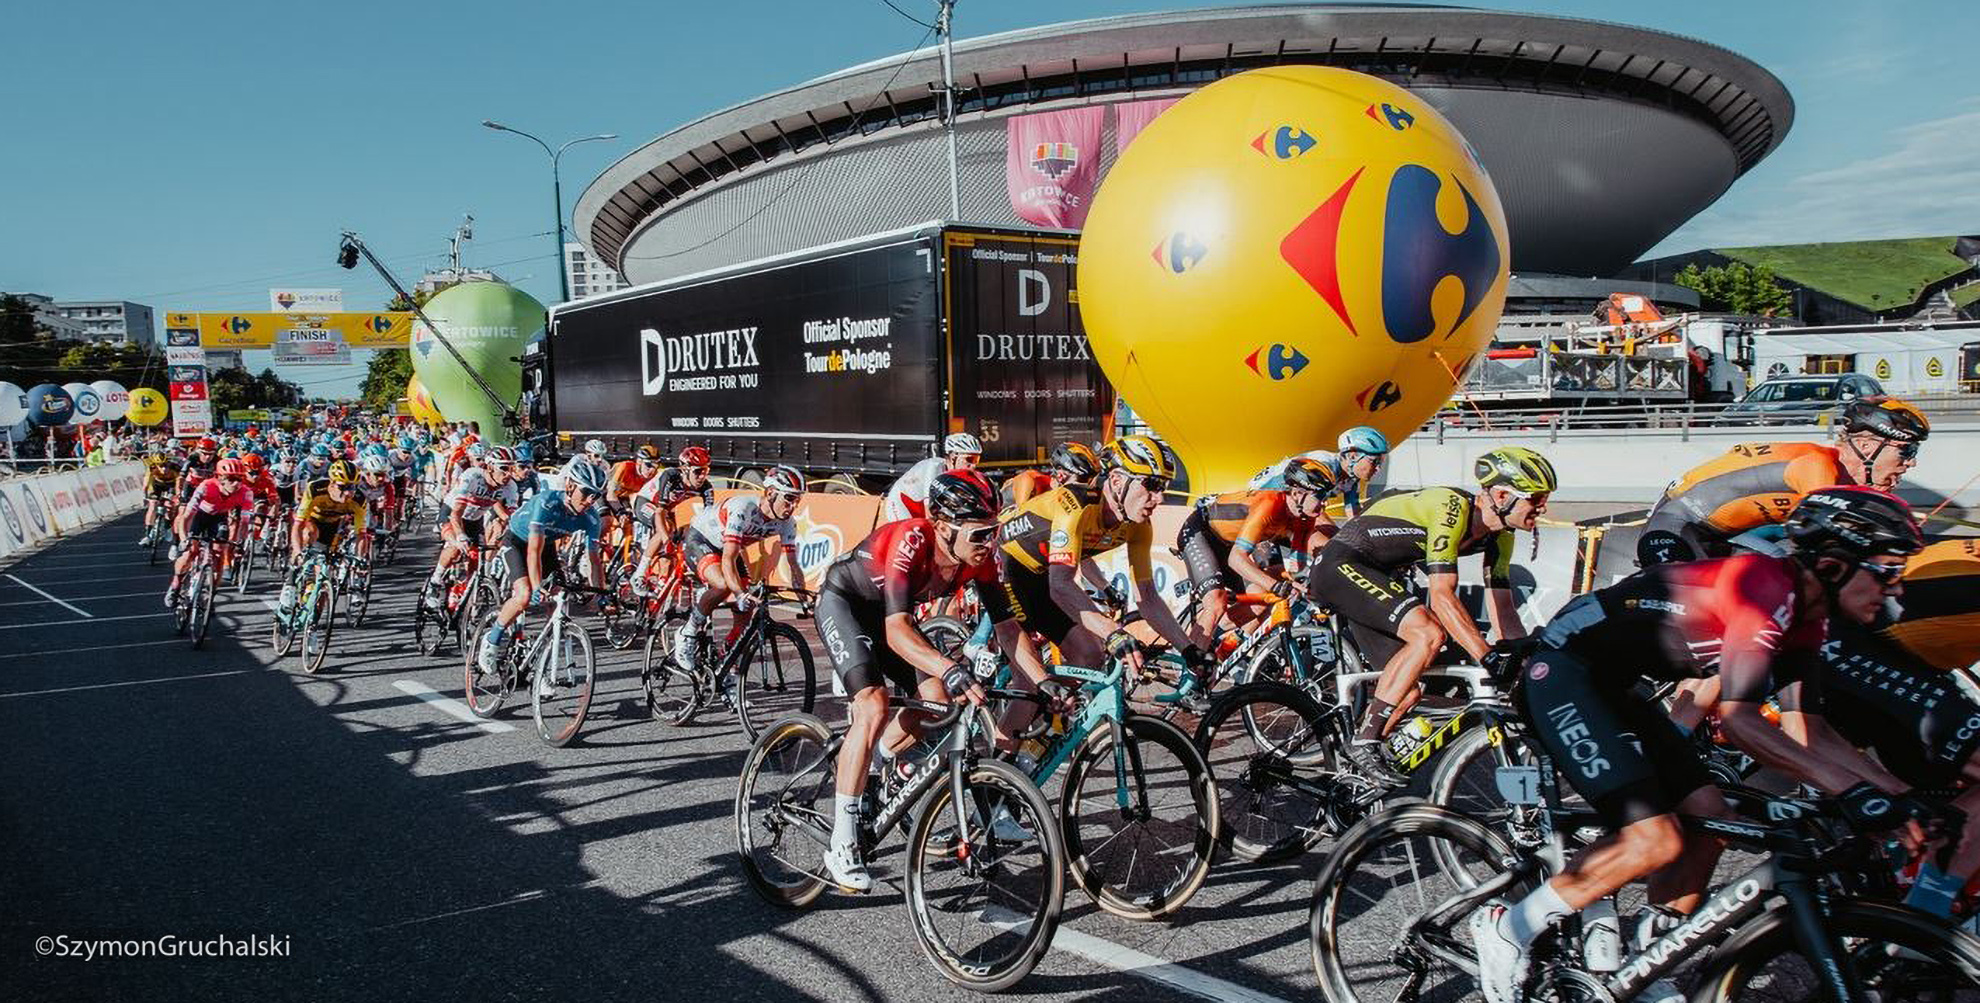 DRUTEX SA - sponsor officiel  du Tour de Pologne